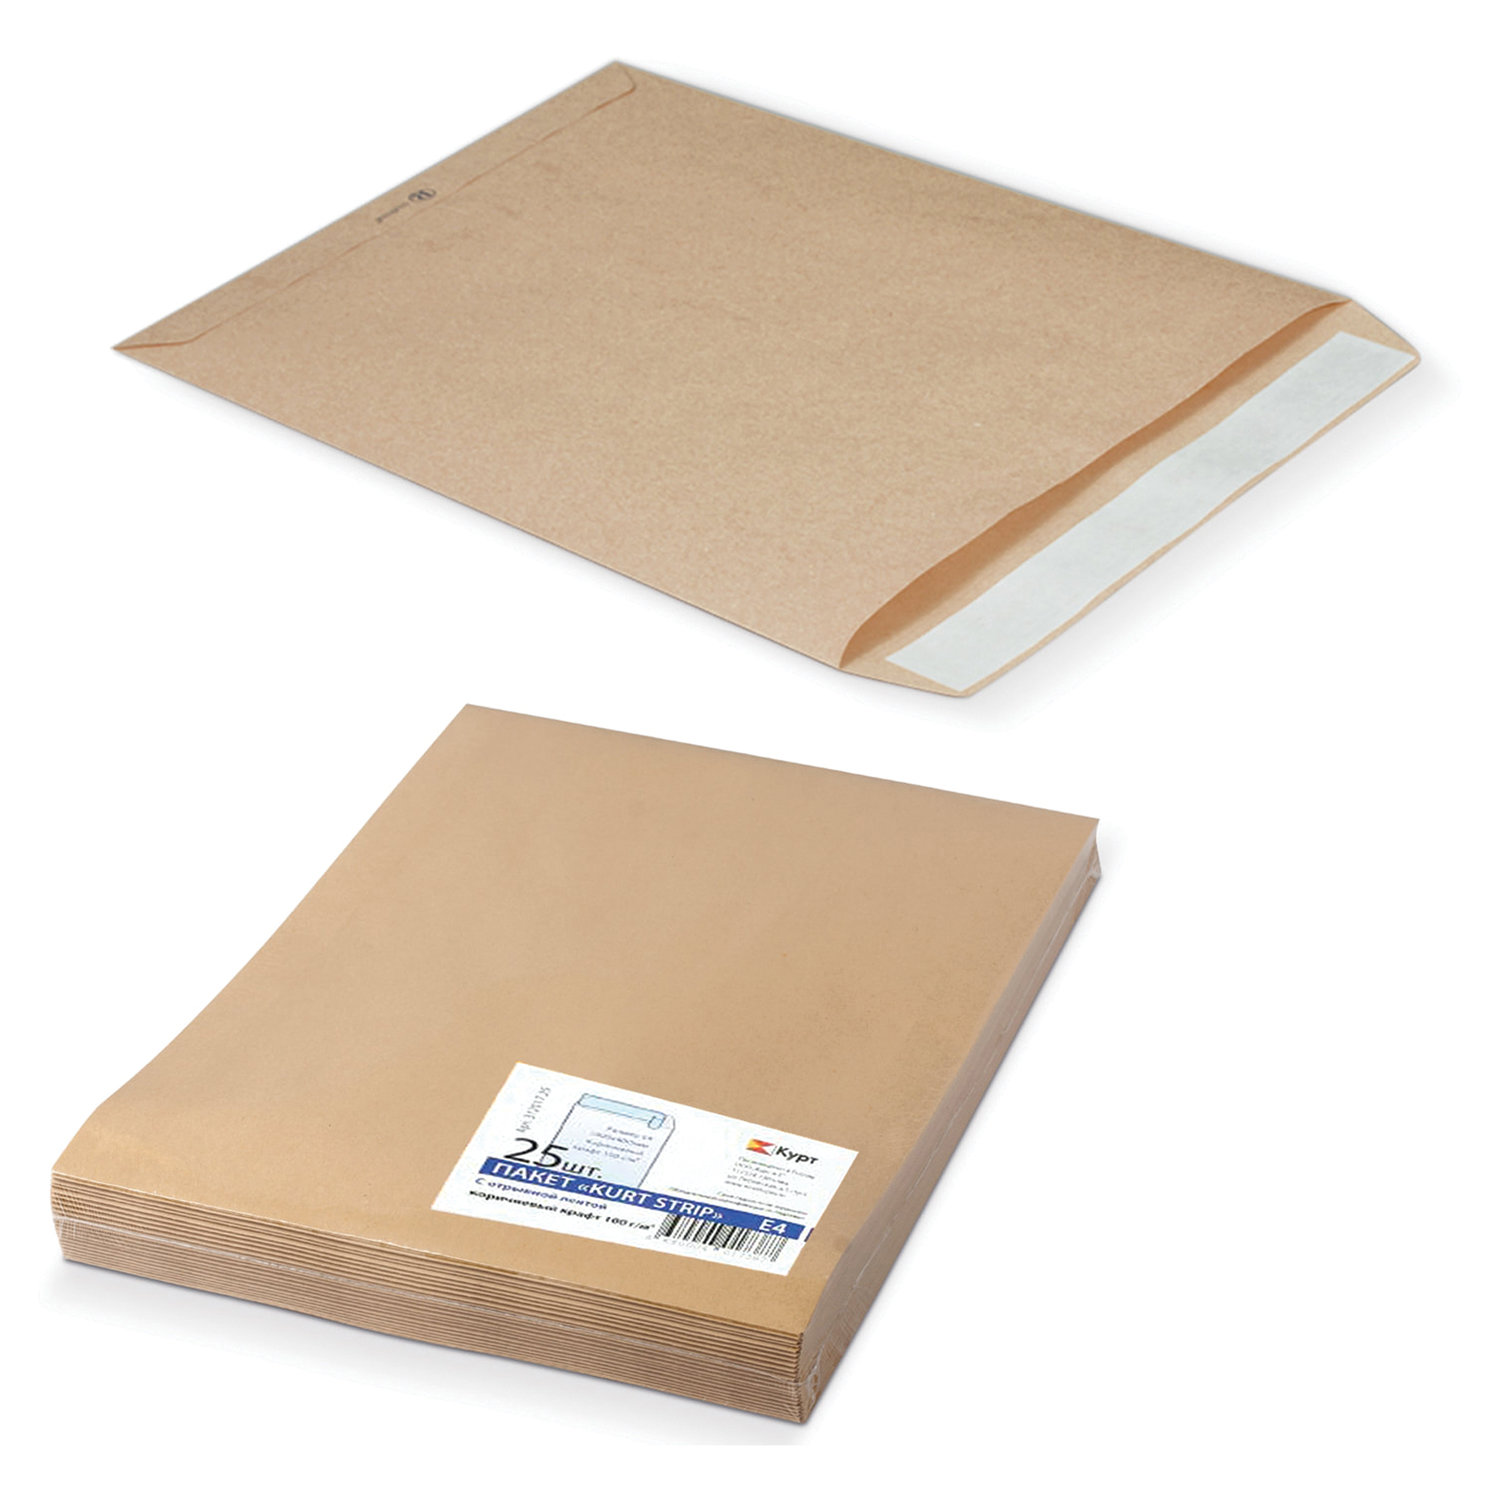 Конверт-пакеты Е4+ плоские (300х400 мм), до 300 листов, крафт-бумага, отрывная полоса, КОМПЛЕКТ 25 шт., 312017.25 купите по выгодной цене